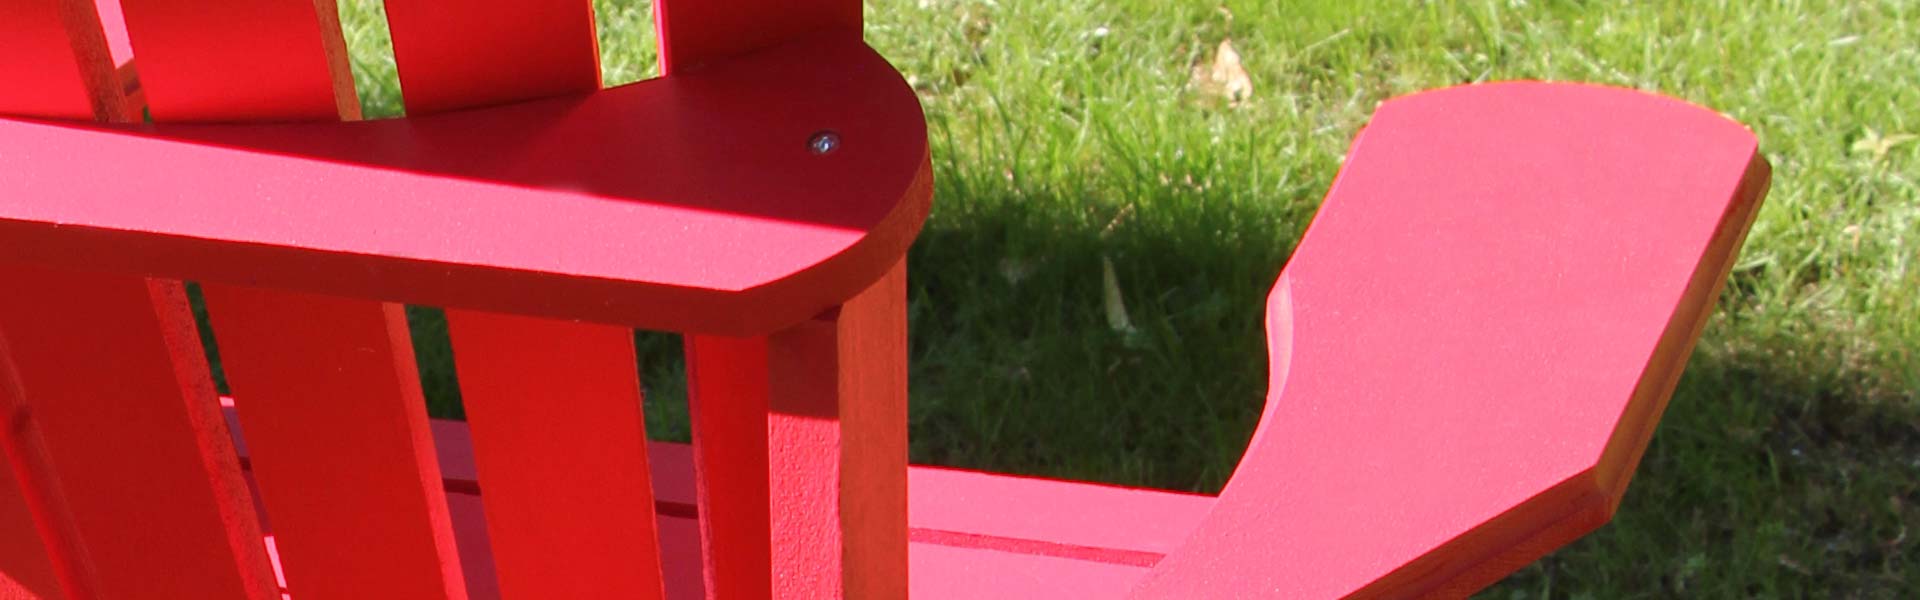 Der-Gartenstuhl Gbr - Muskoka Chair, Adirondack Chair, Gartenstühle aus Norderstedt